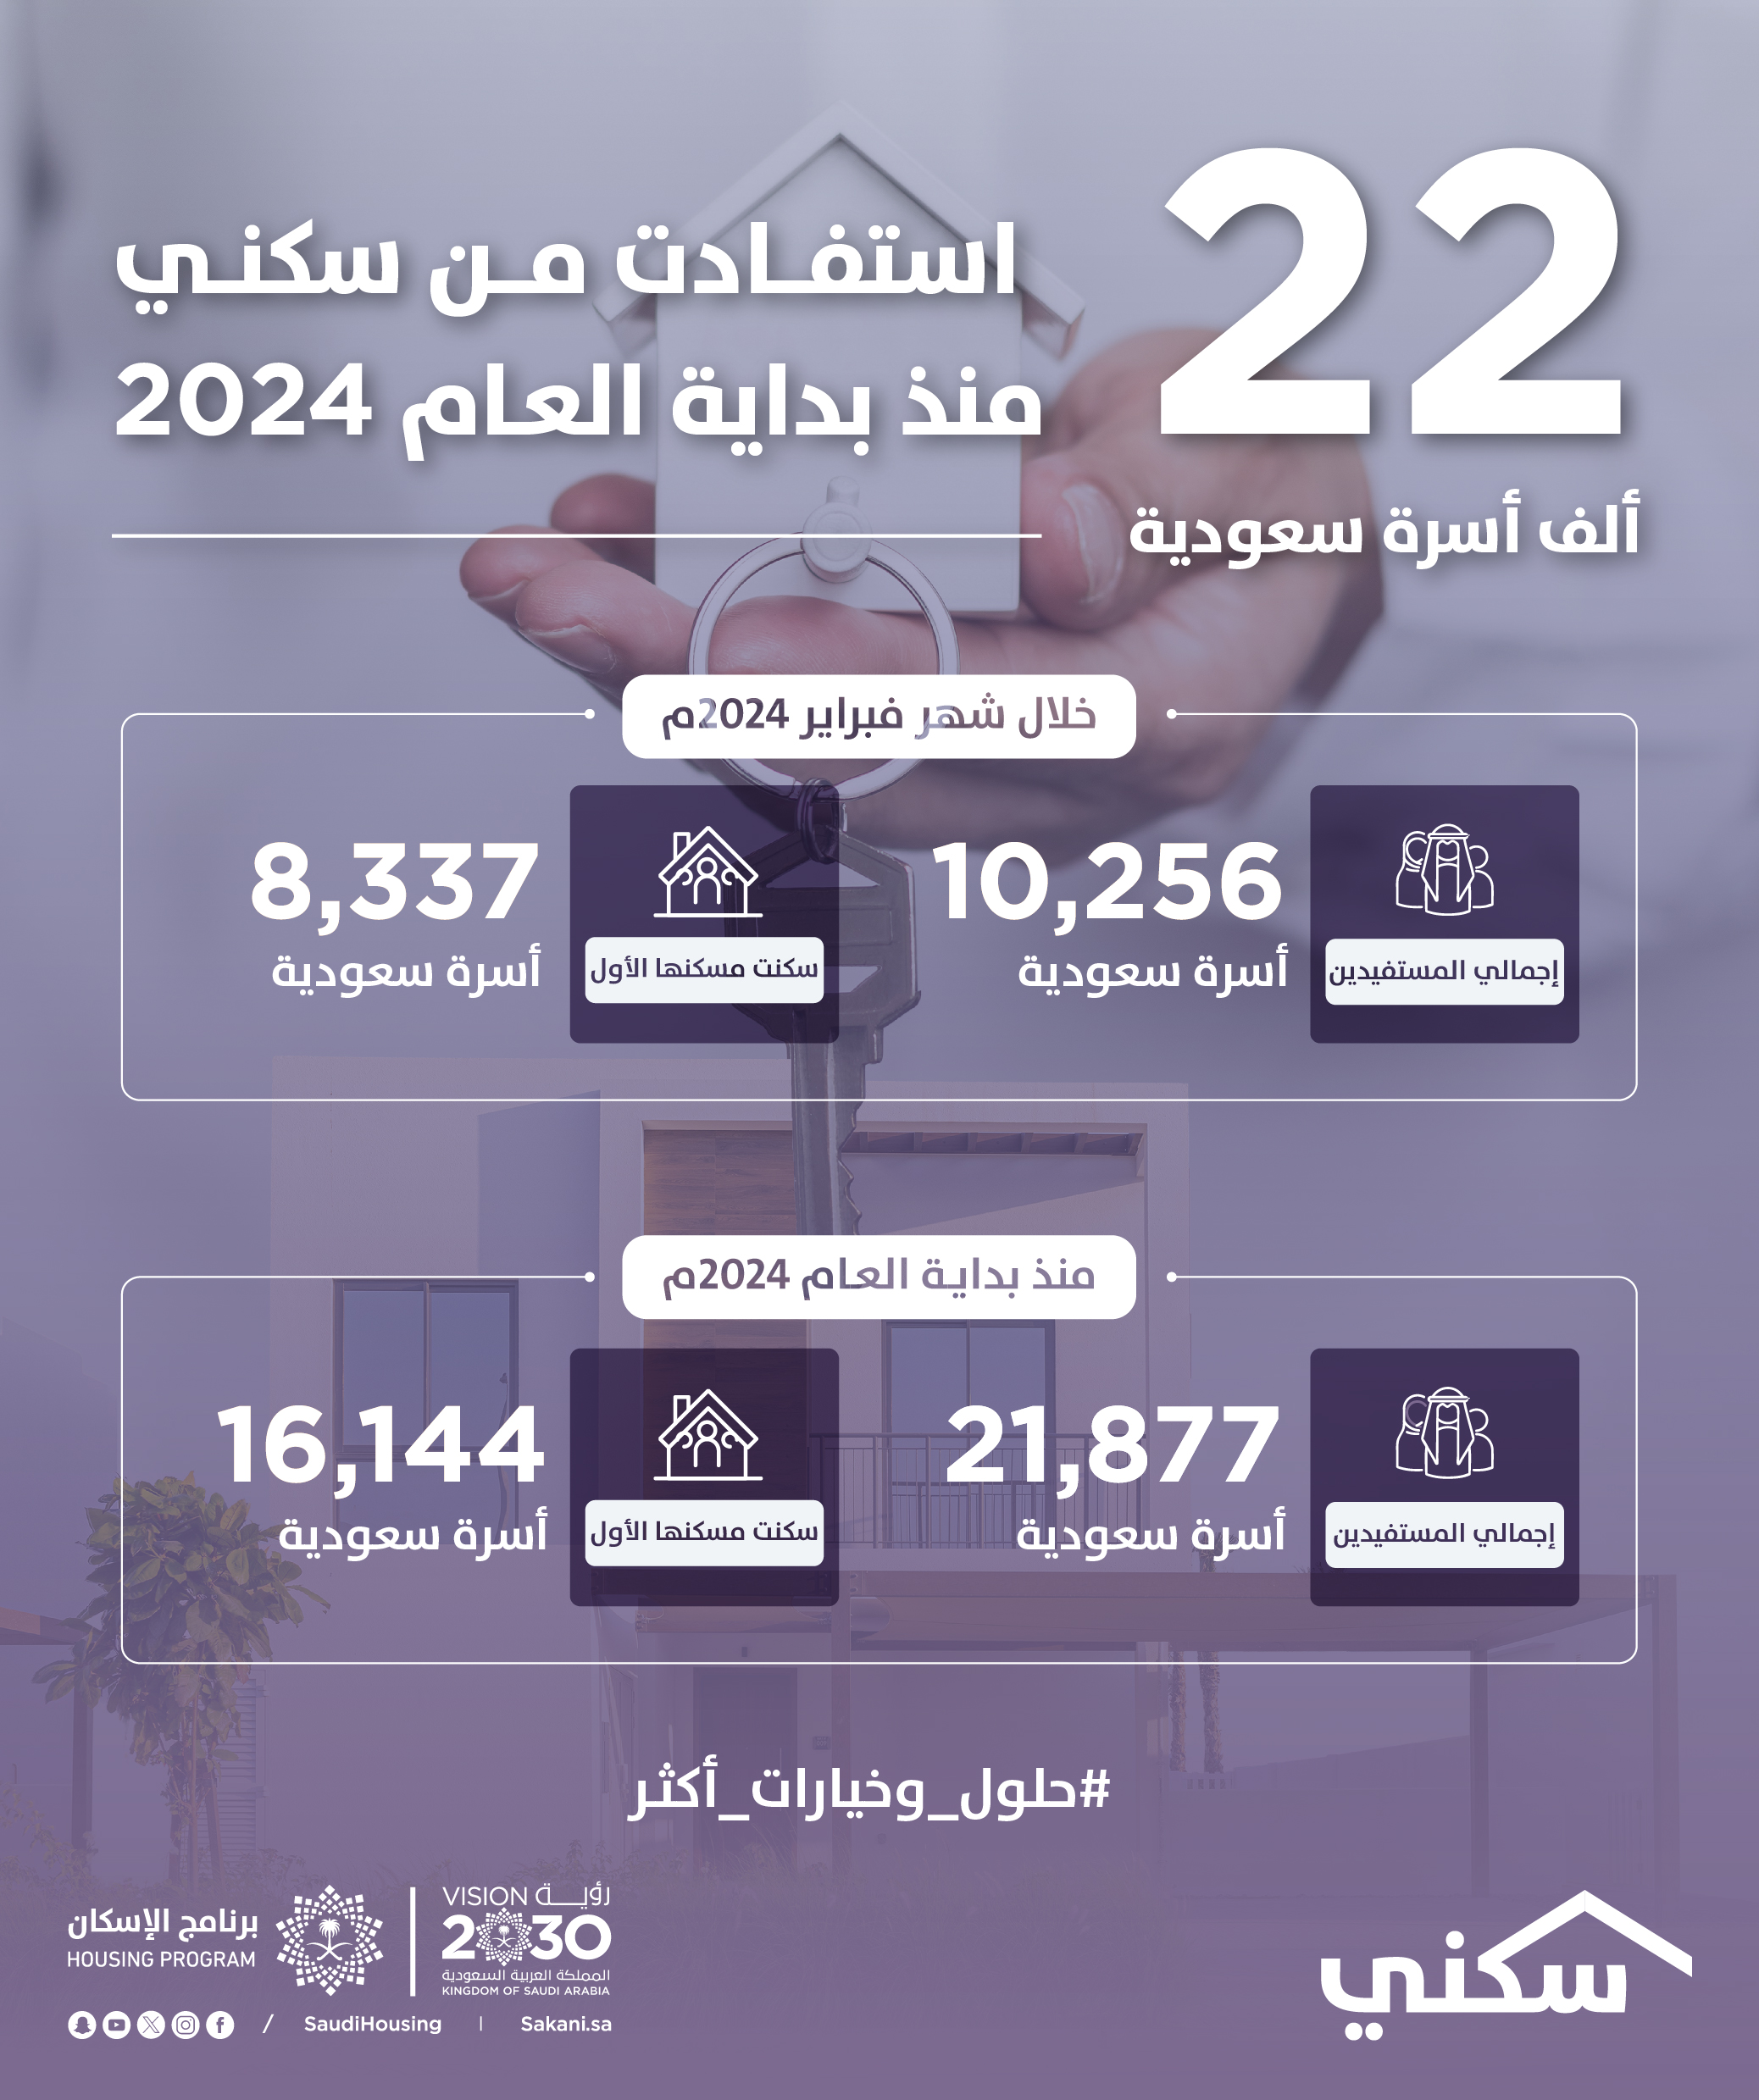 "سكني": نحو 22 ألف أسرة استفادت وأكثر من 16 ألف أسرة سكنت مسكنها الأول منذ بداية 2024